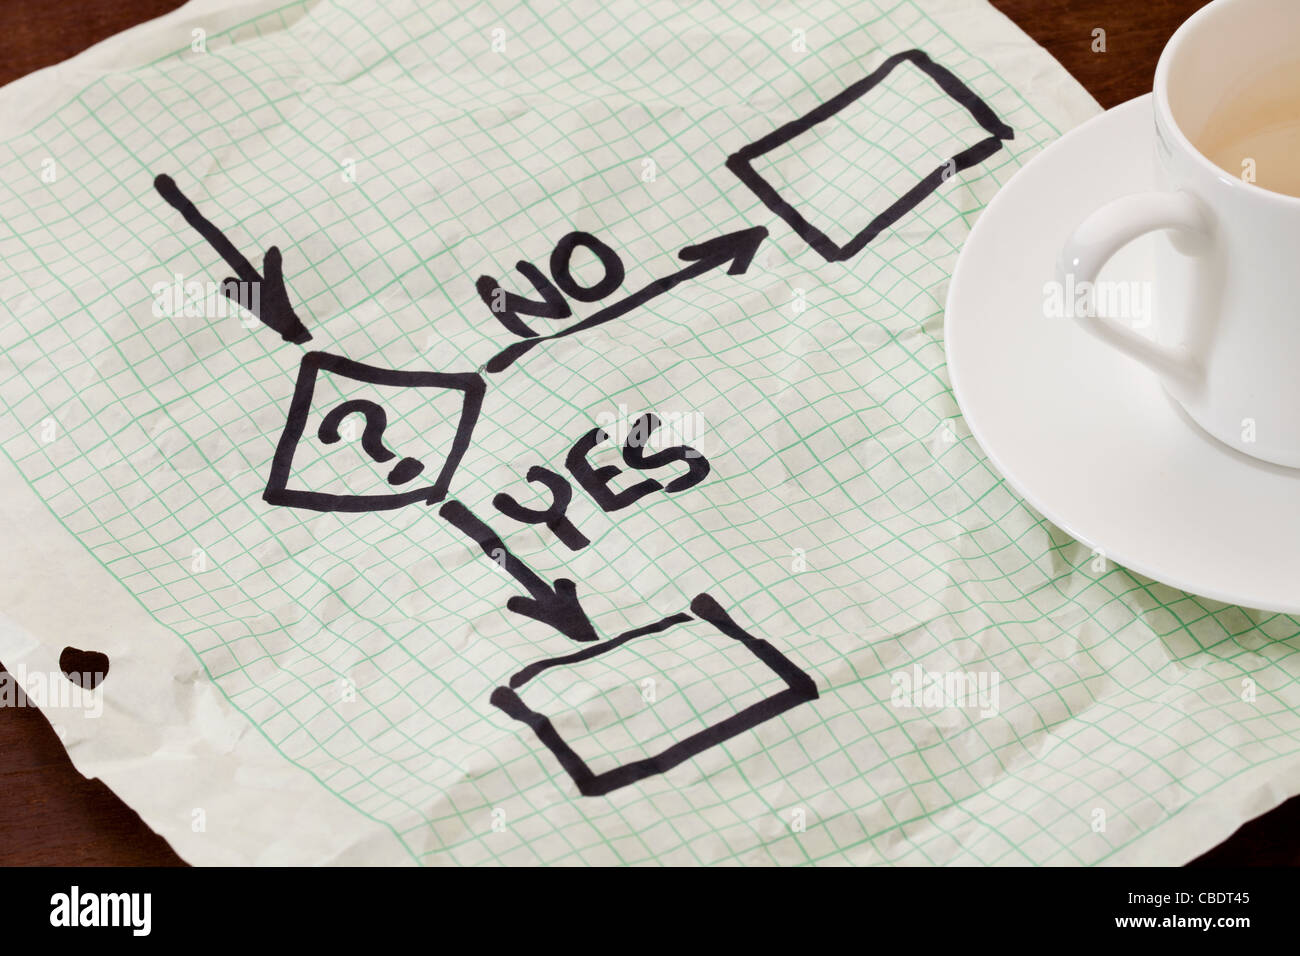 Ja oder Nein Entscheidung Flussdiagramm - schwarze Markierung Skizze auf einem Raster Papier mit einer Kaffeetasse Stockfoto